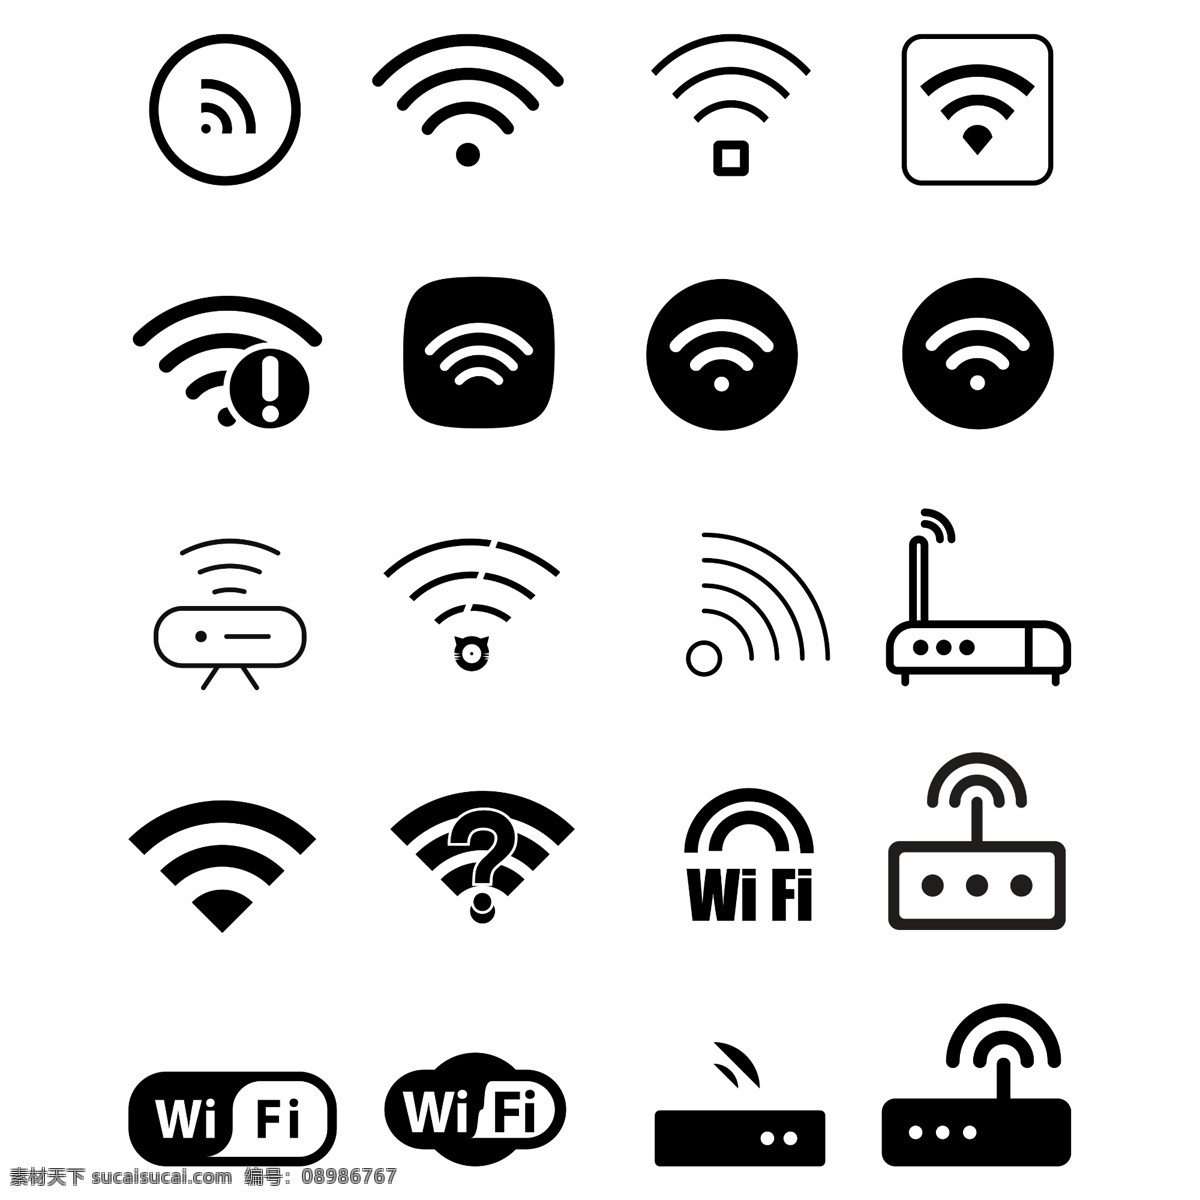 wifi 图标 免费 标志 wifi图标 wifi标志 免费wifi wifi开放 开放